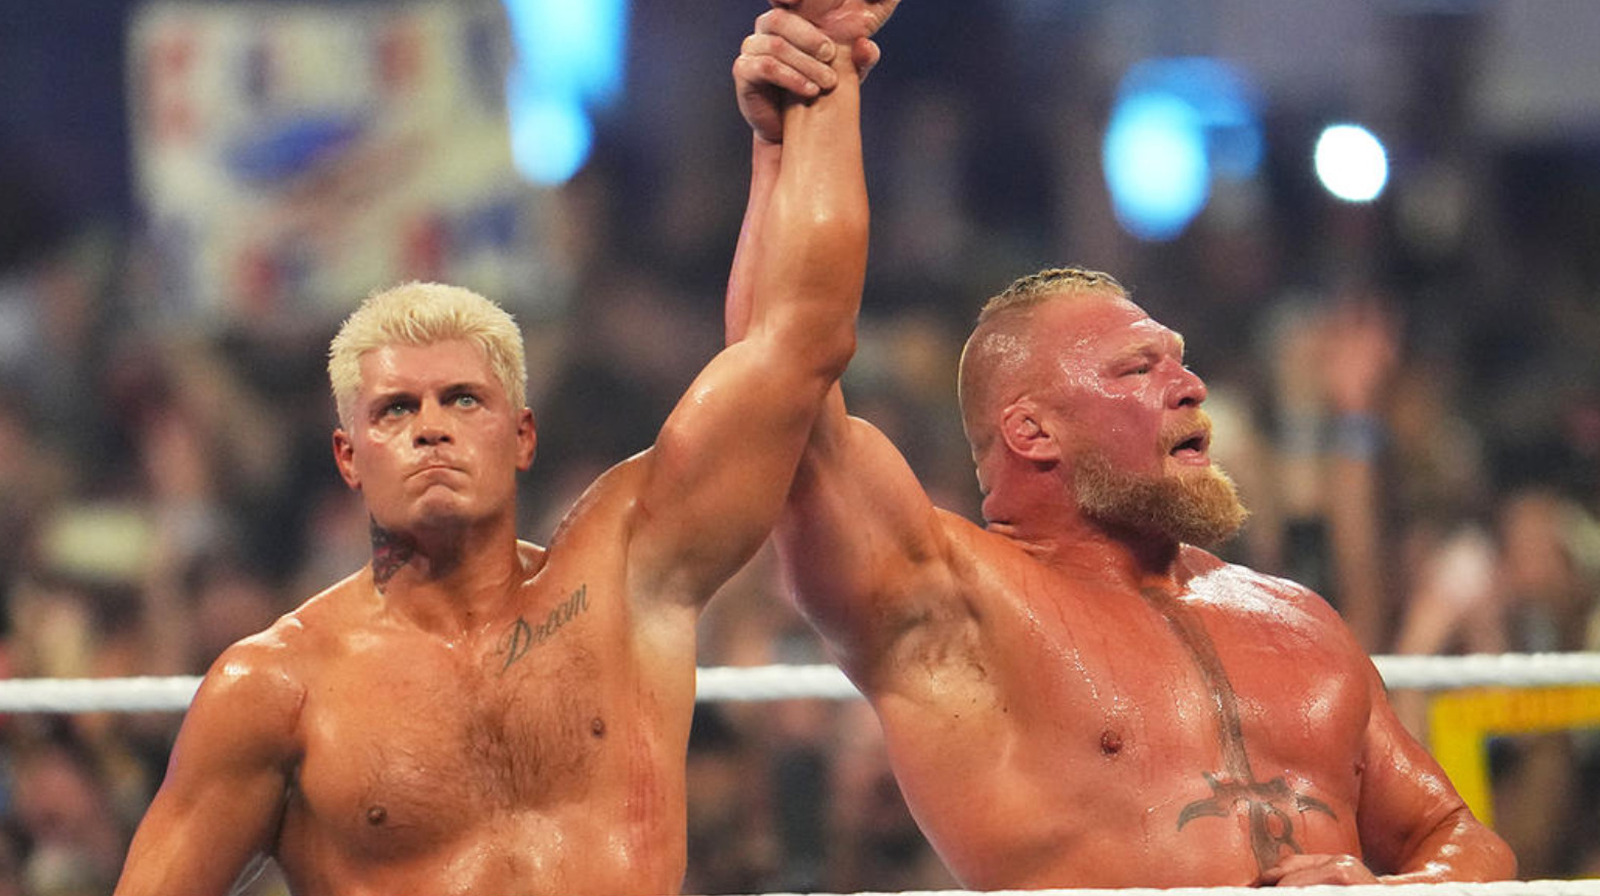 Eric Bischoff đánh giá Cody Rhodes so với WWE.  Câu chuyện của Brock Lesnar